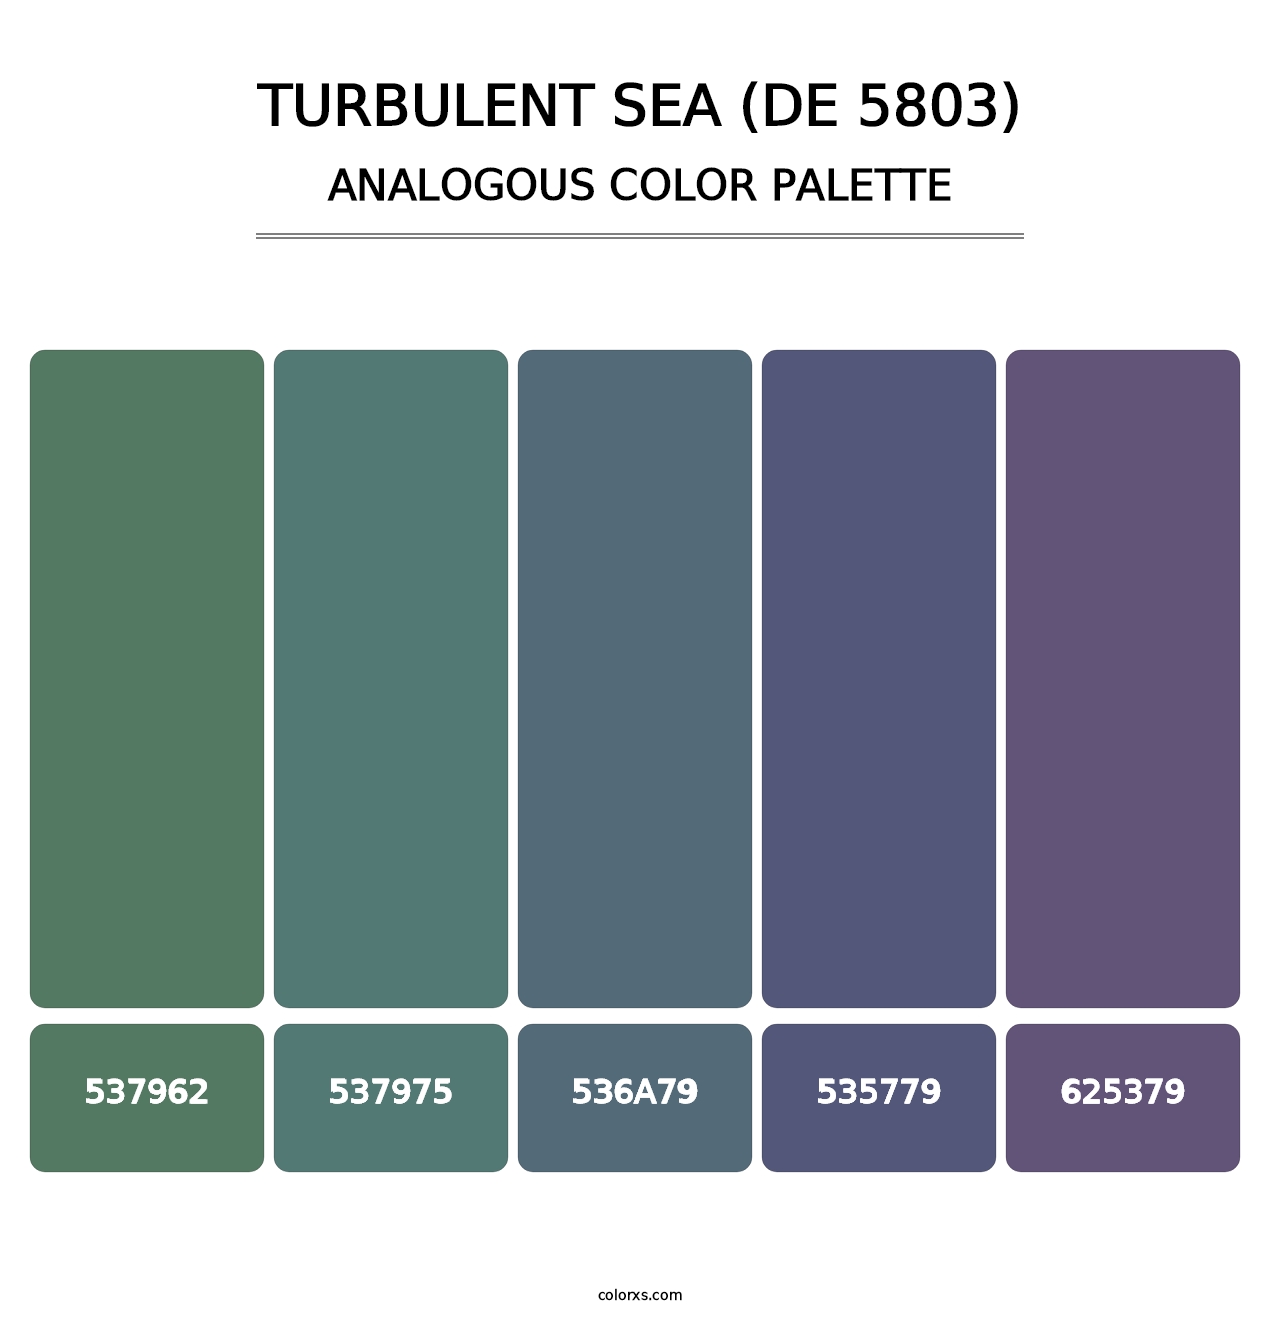 Turbulent Sea (DE 5803) - Analogous Color Palette